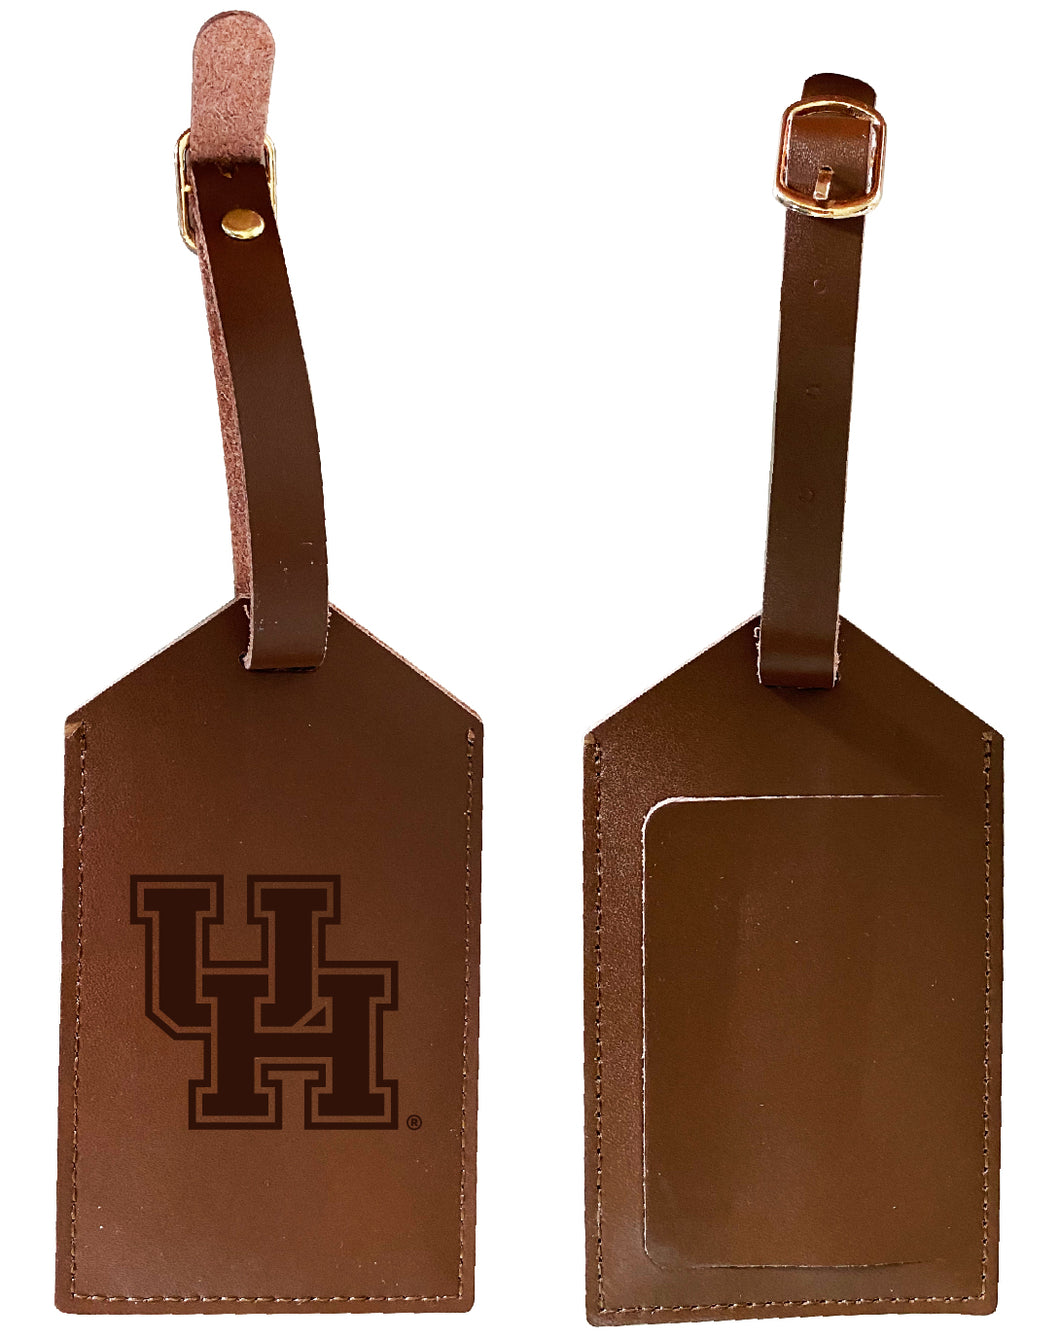 University of Houston Leather Luggage Tag Engraved